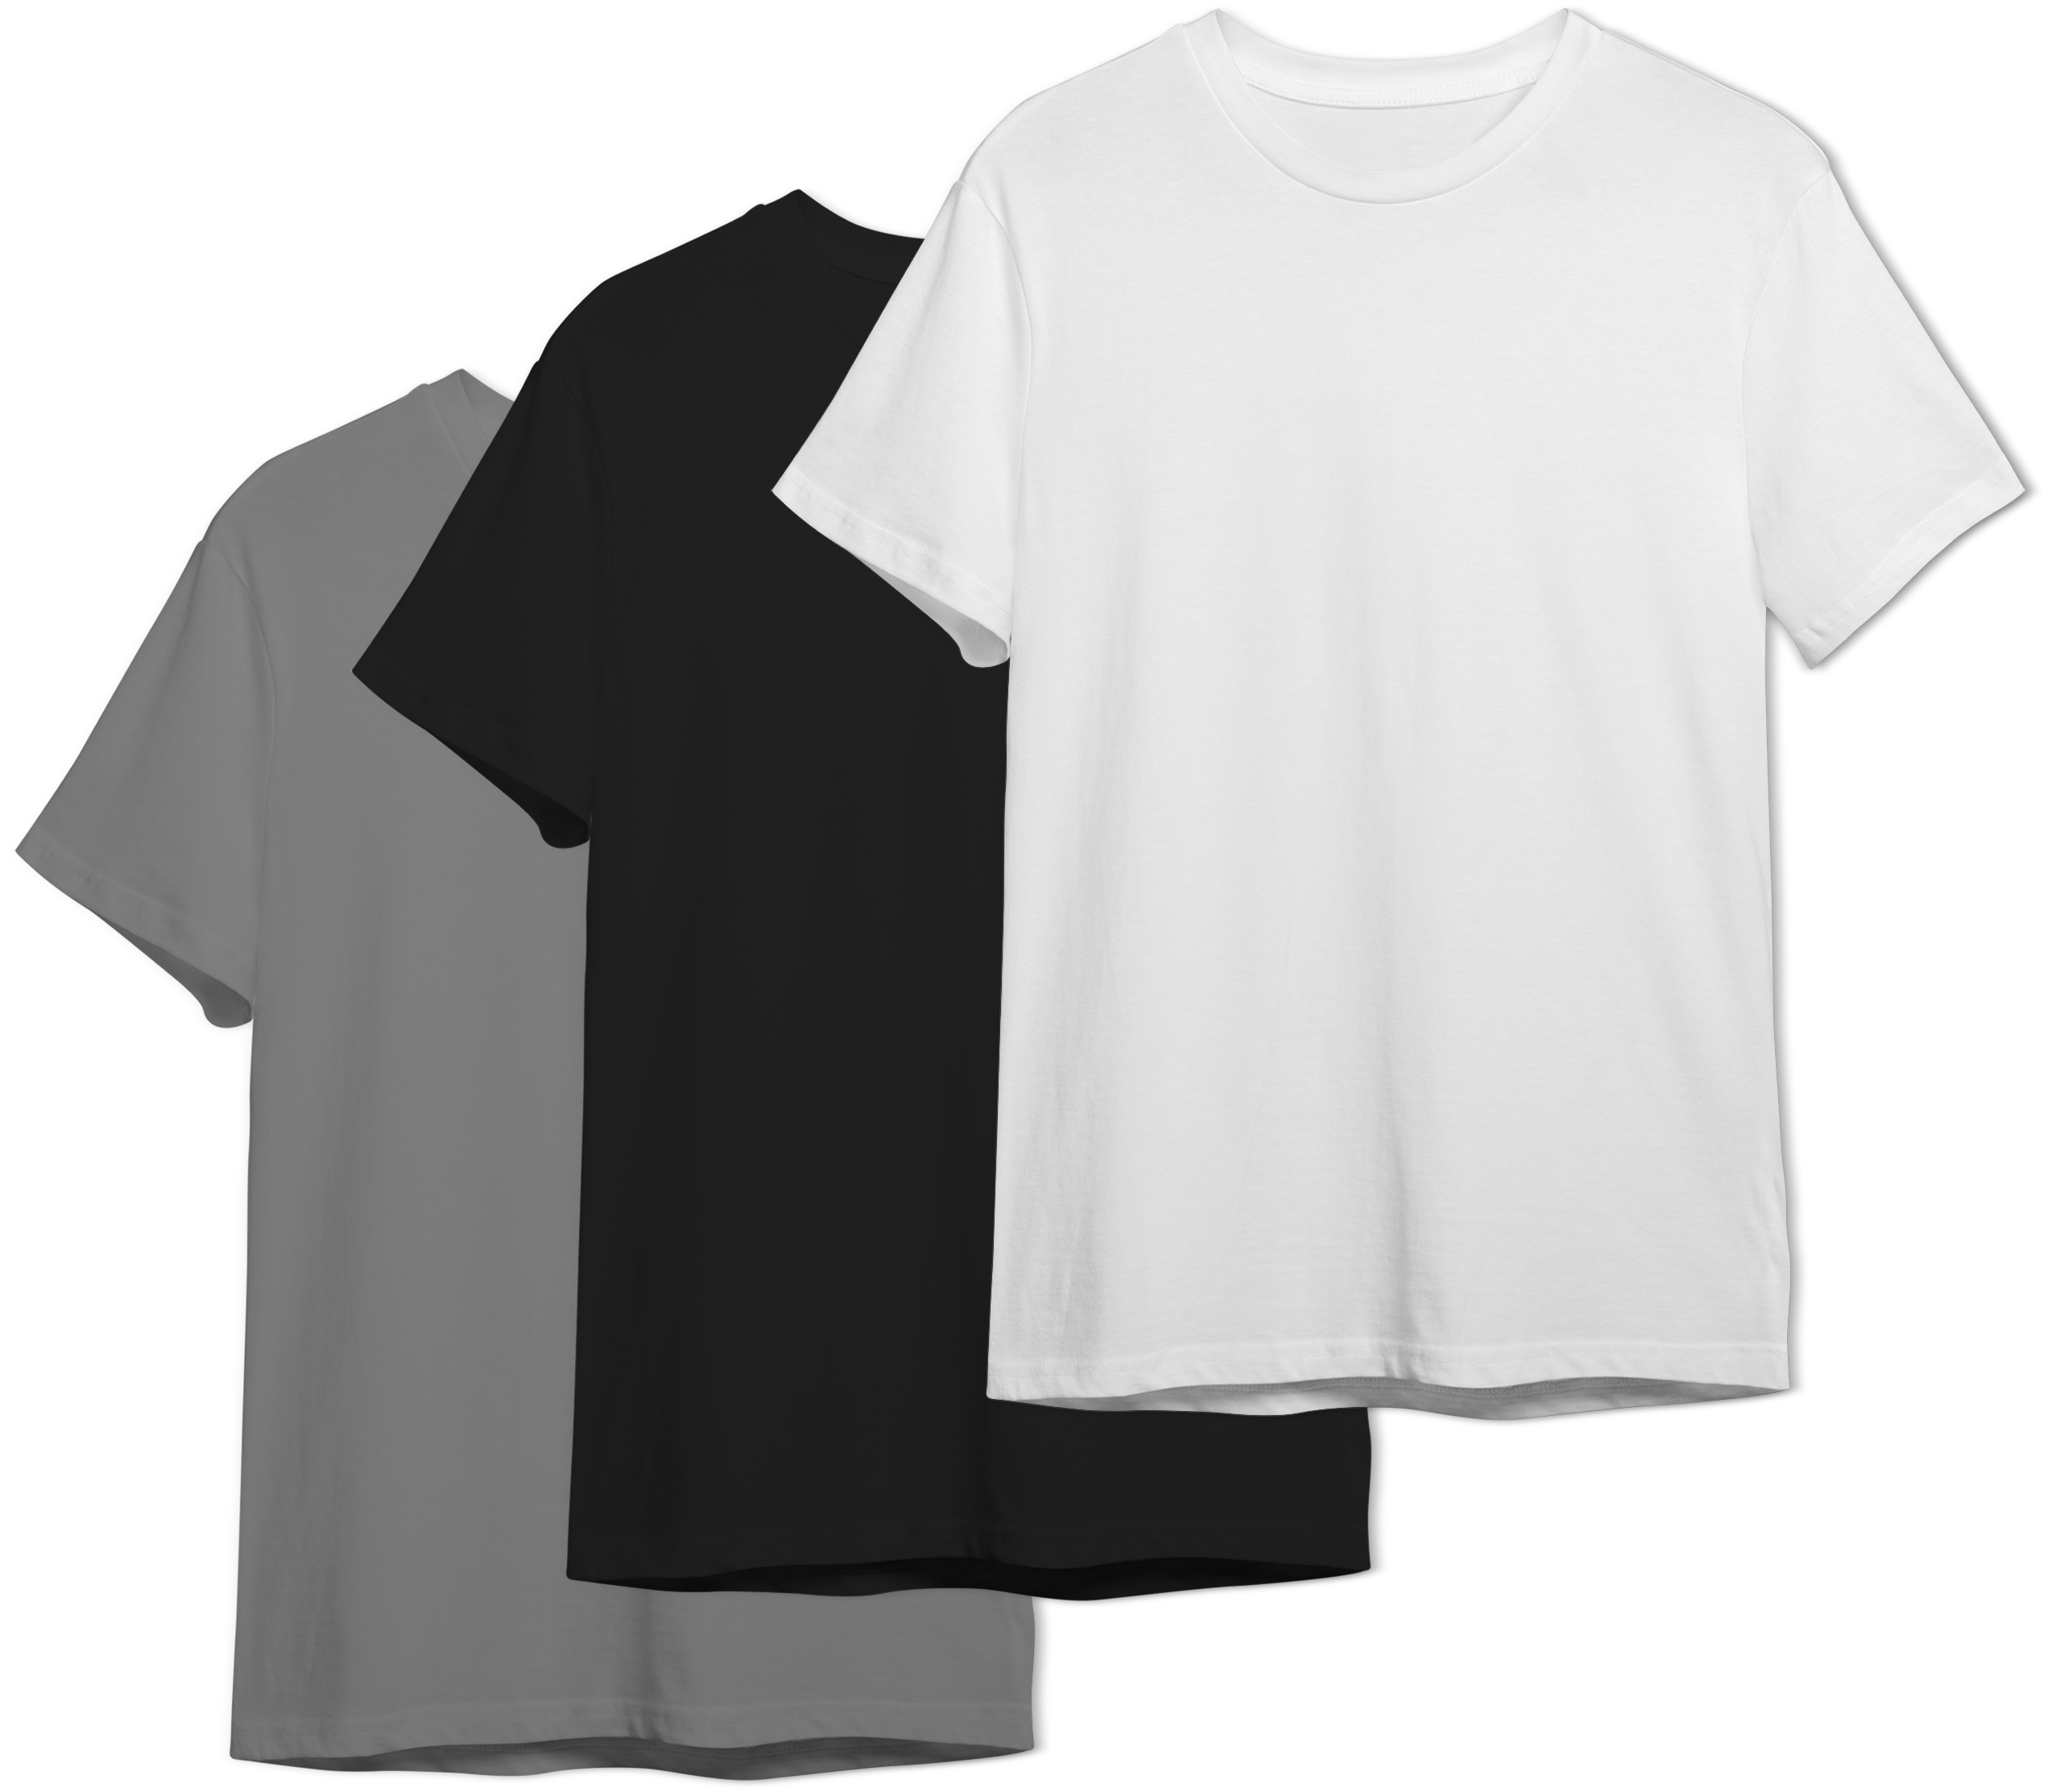 Lulu Essentials - 3 Pack Camiseta [Blanca-Negro-Gris] manga corta de Algodon